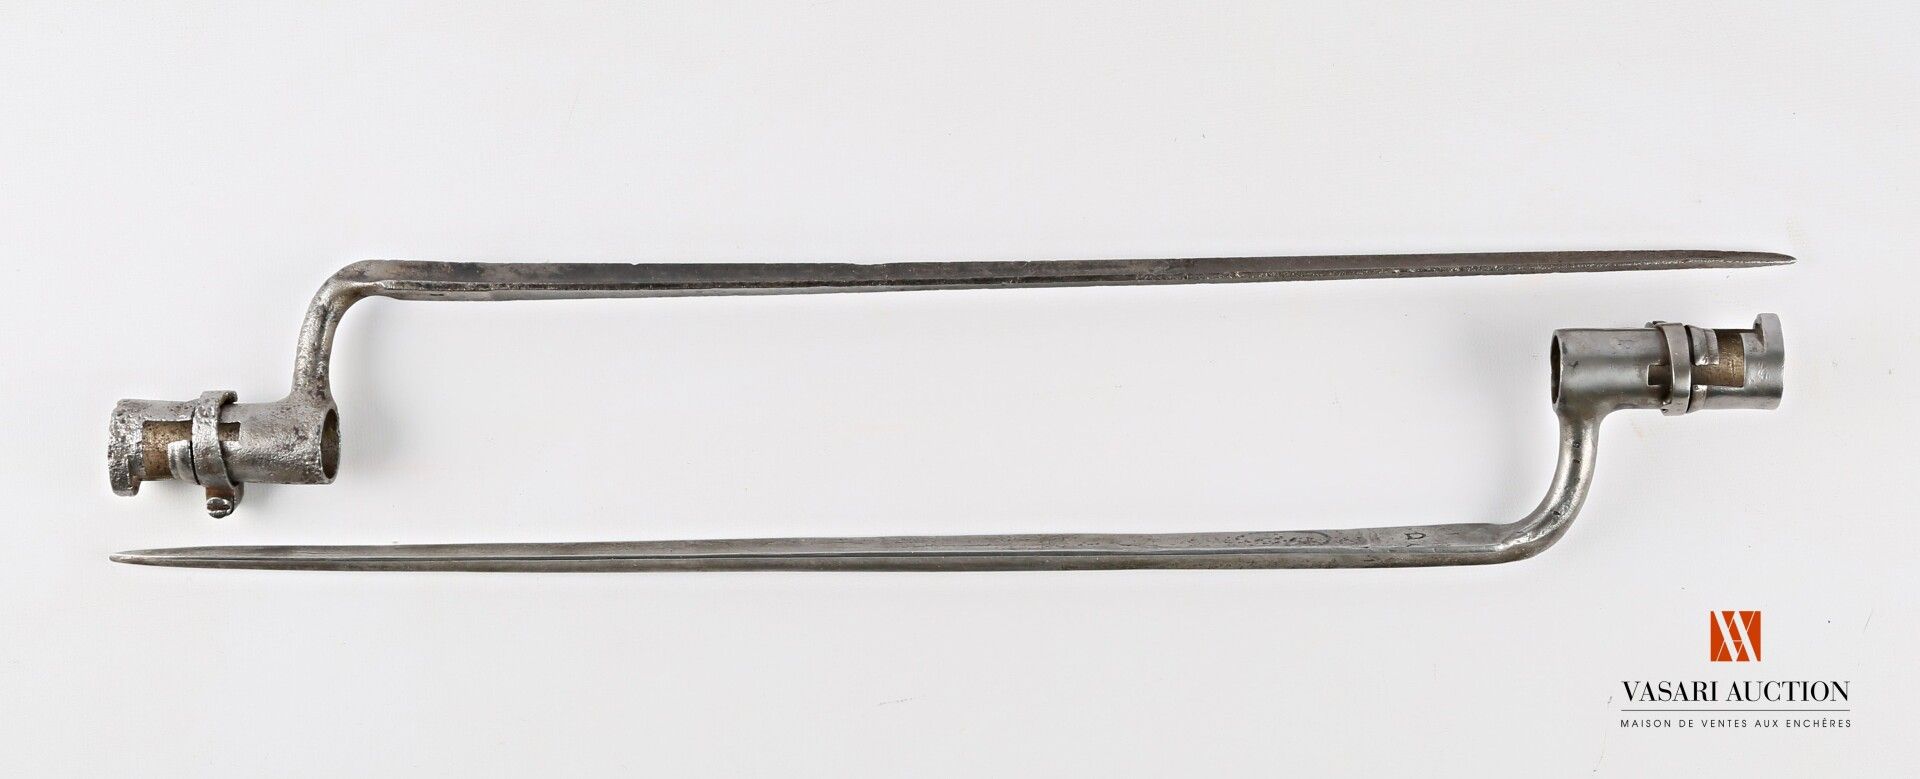 Null 1822型刺刀插座，刀片45厘米，插座67毫米，21毫米，磨损，氧化，SF，TL 53厘米，2件

法国--19世纪